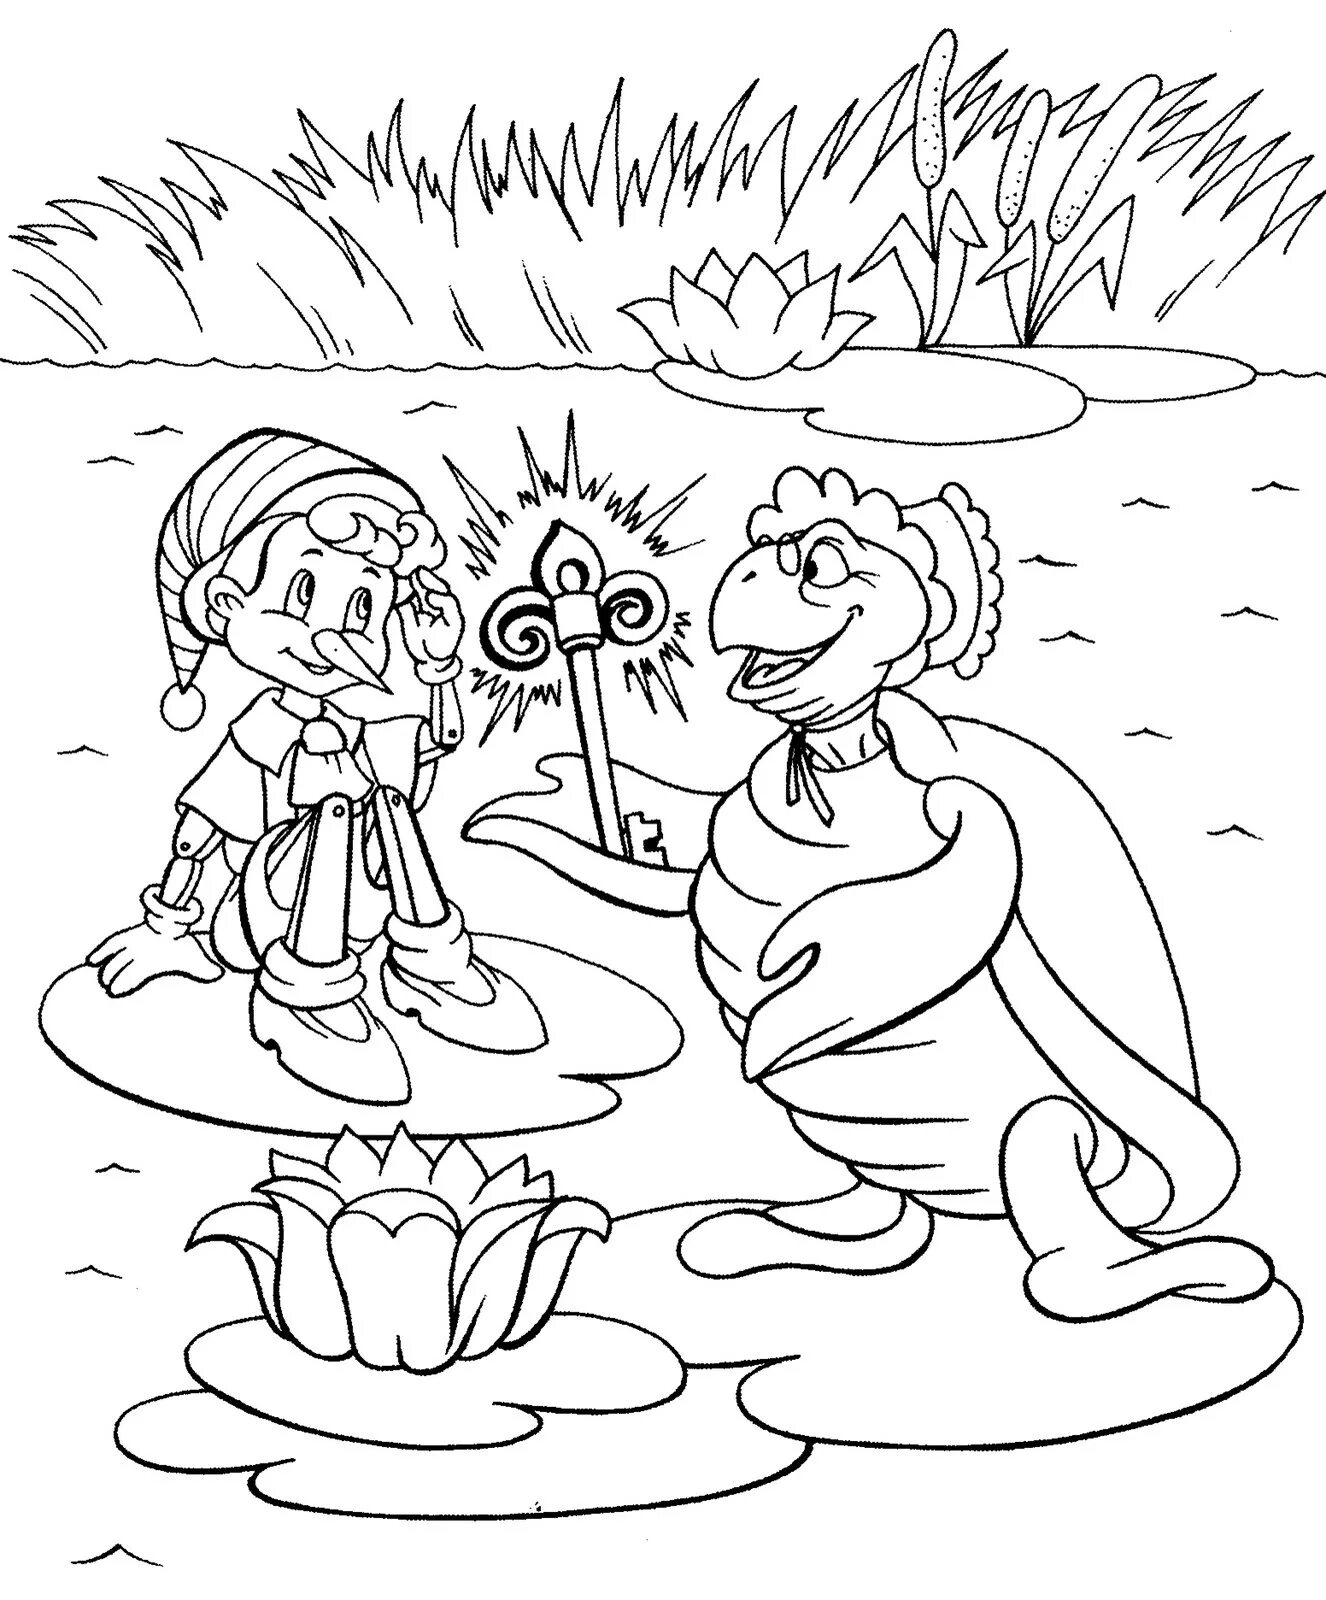 Иллюстрации к сказкам раскраски. Буратино и черепаха Тортилла. Черепаха Тортилла золотой ключик. Буратино и черепаха торти ла. Черепаха Тортила Буратино.